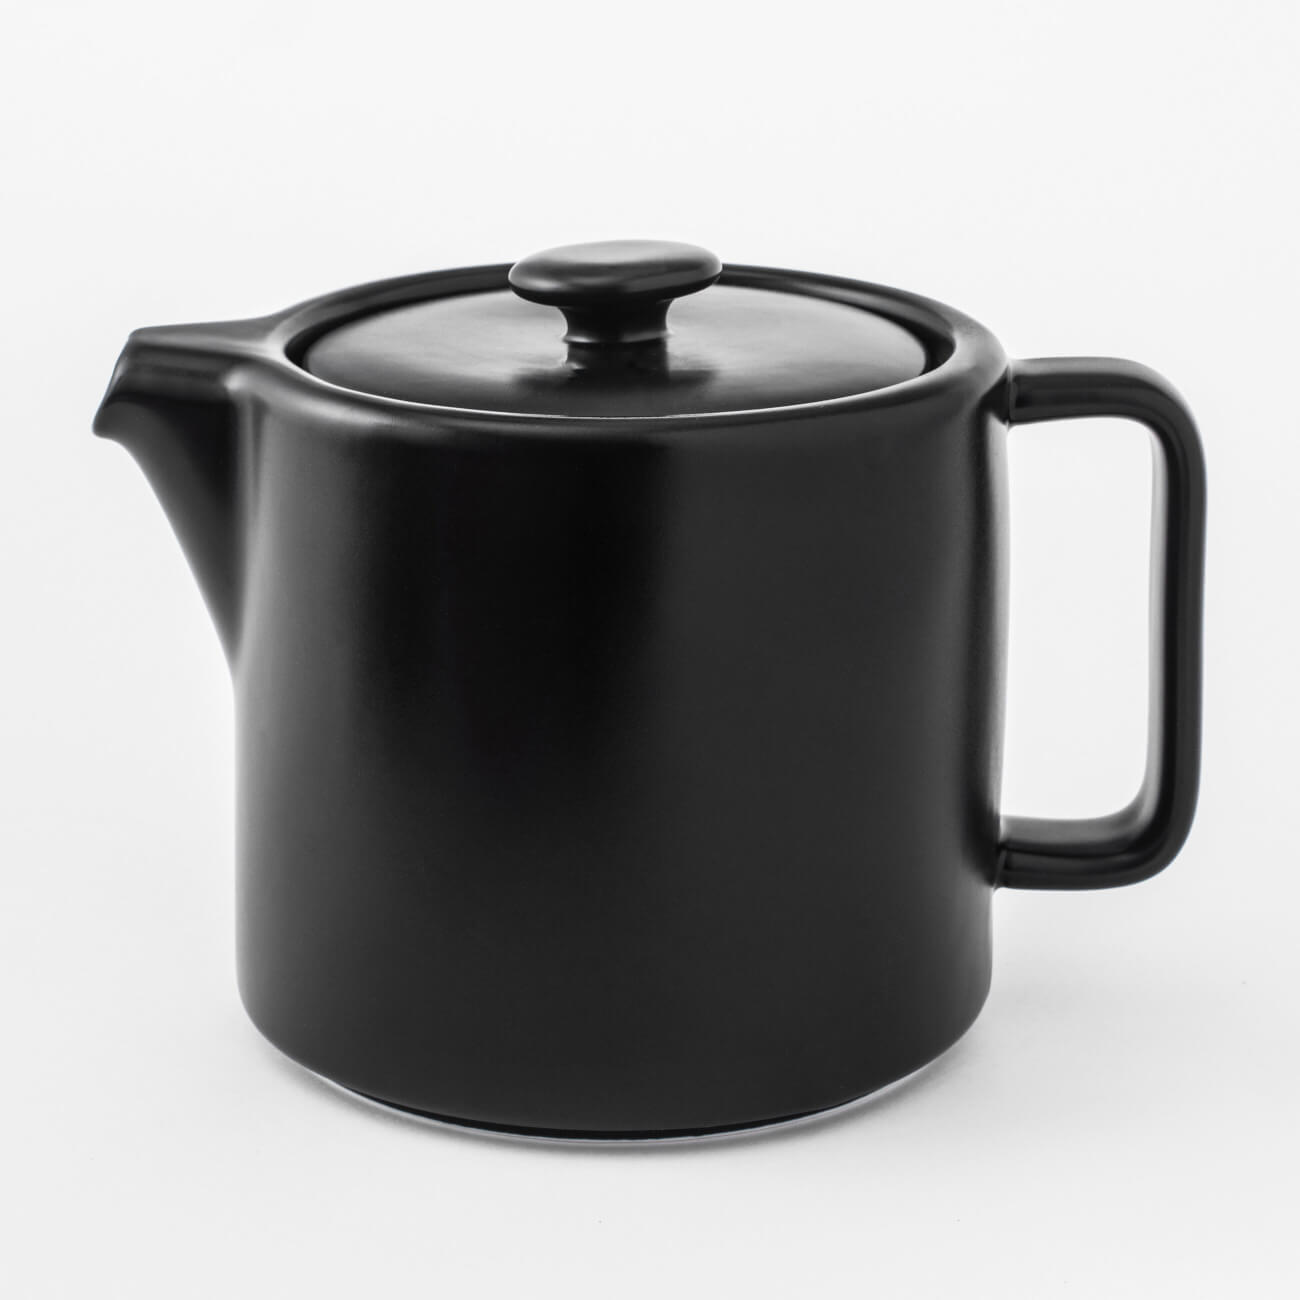 Чайник заварочный, 1,1 л, фарфор Р, черный, Matte black чайник заварочный башкирский фарфор классик 0 85 л